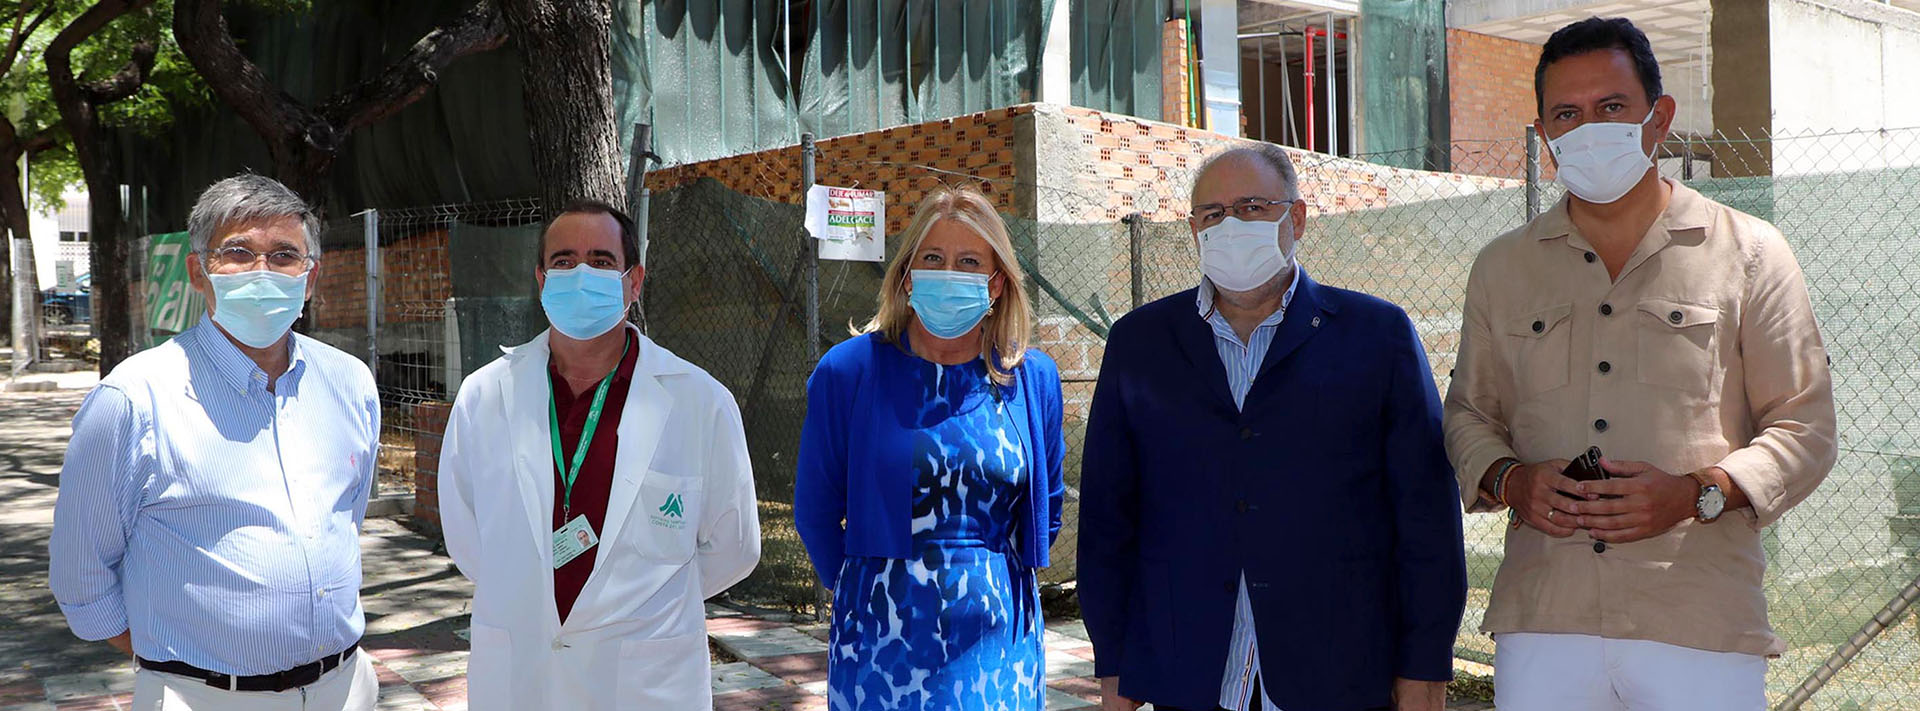 Las obras del centro de salud de San Pedro Alcántara finalizarán este año